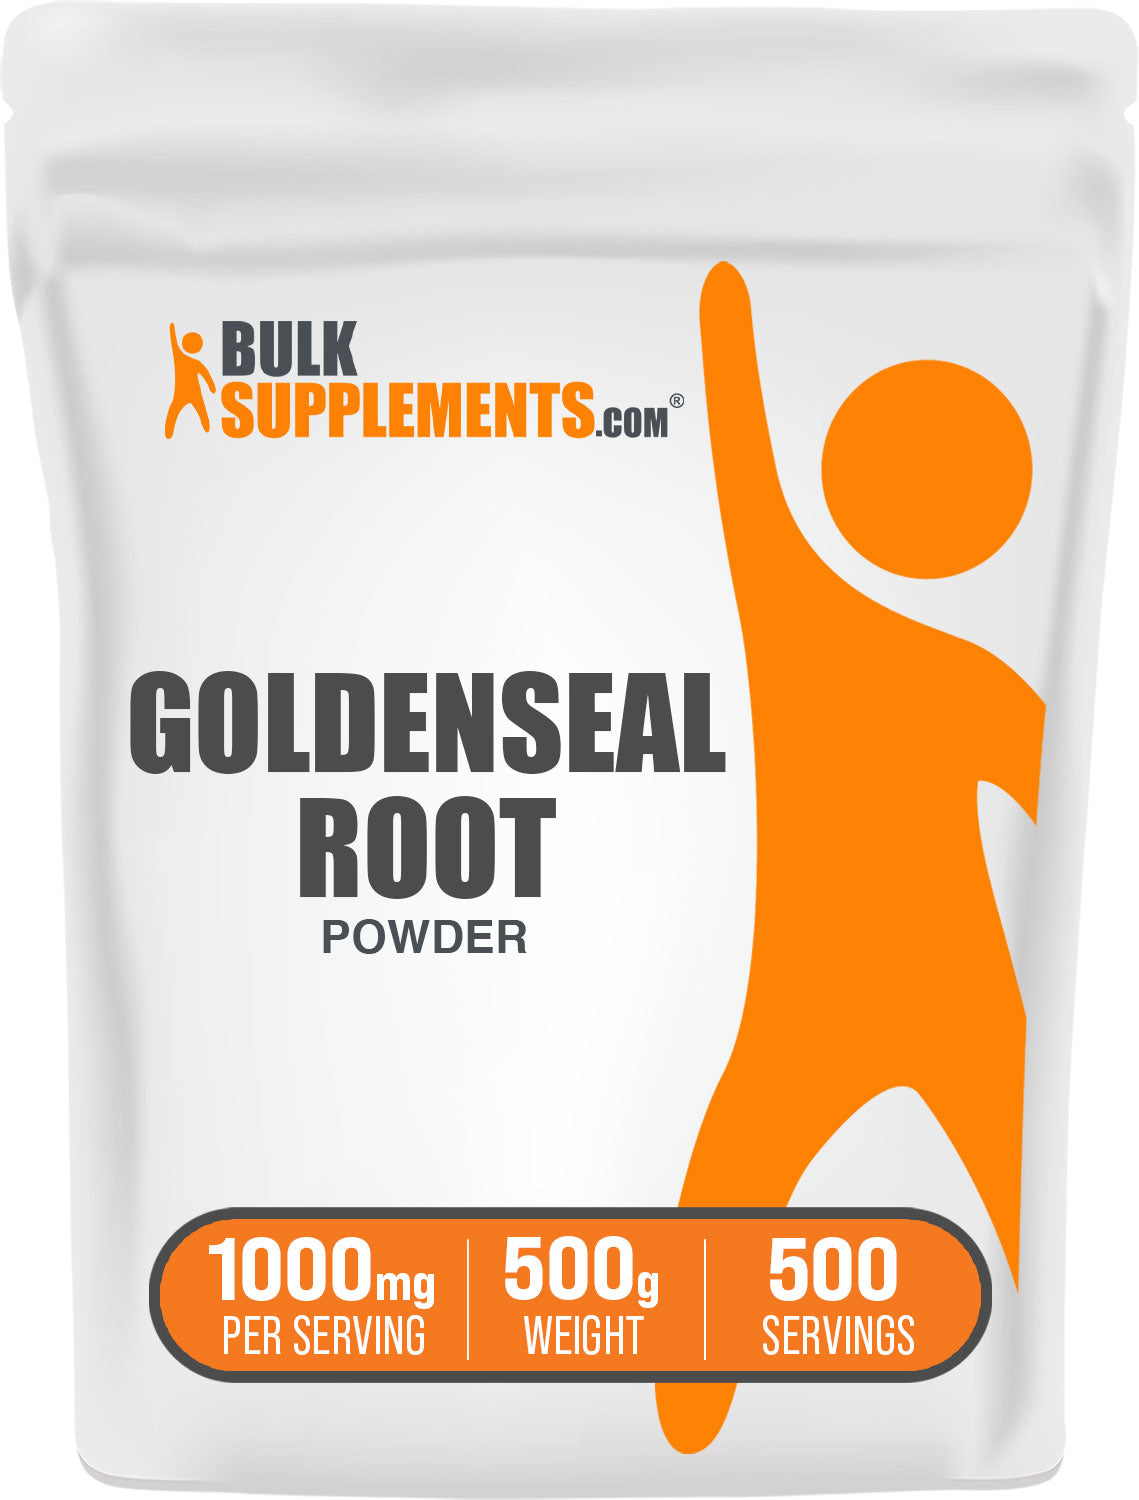 Goldenseal root powder bag image 500g